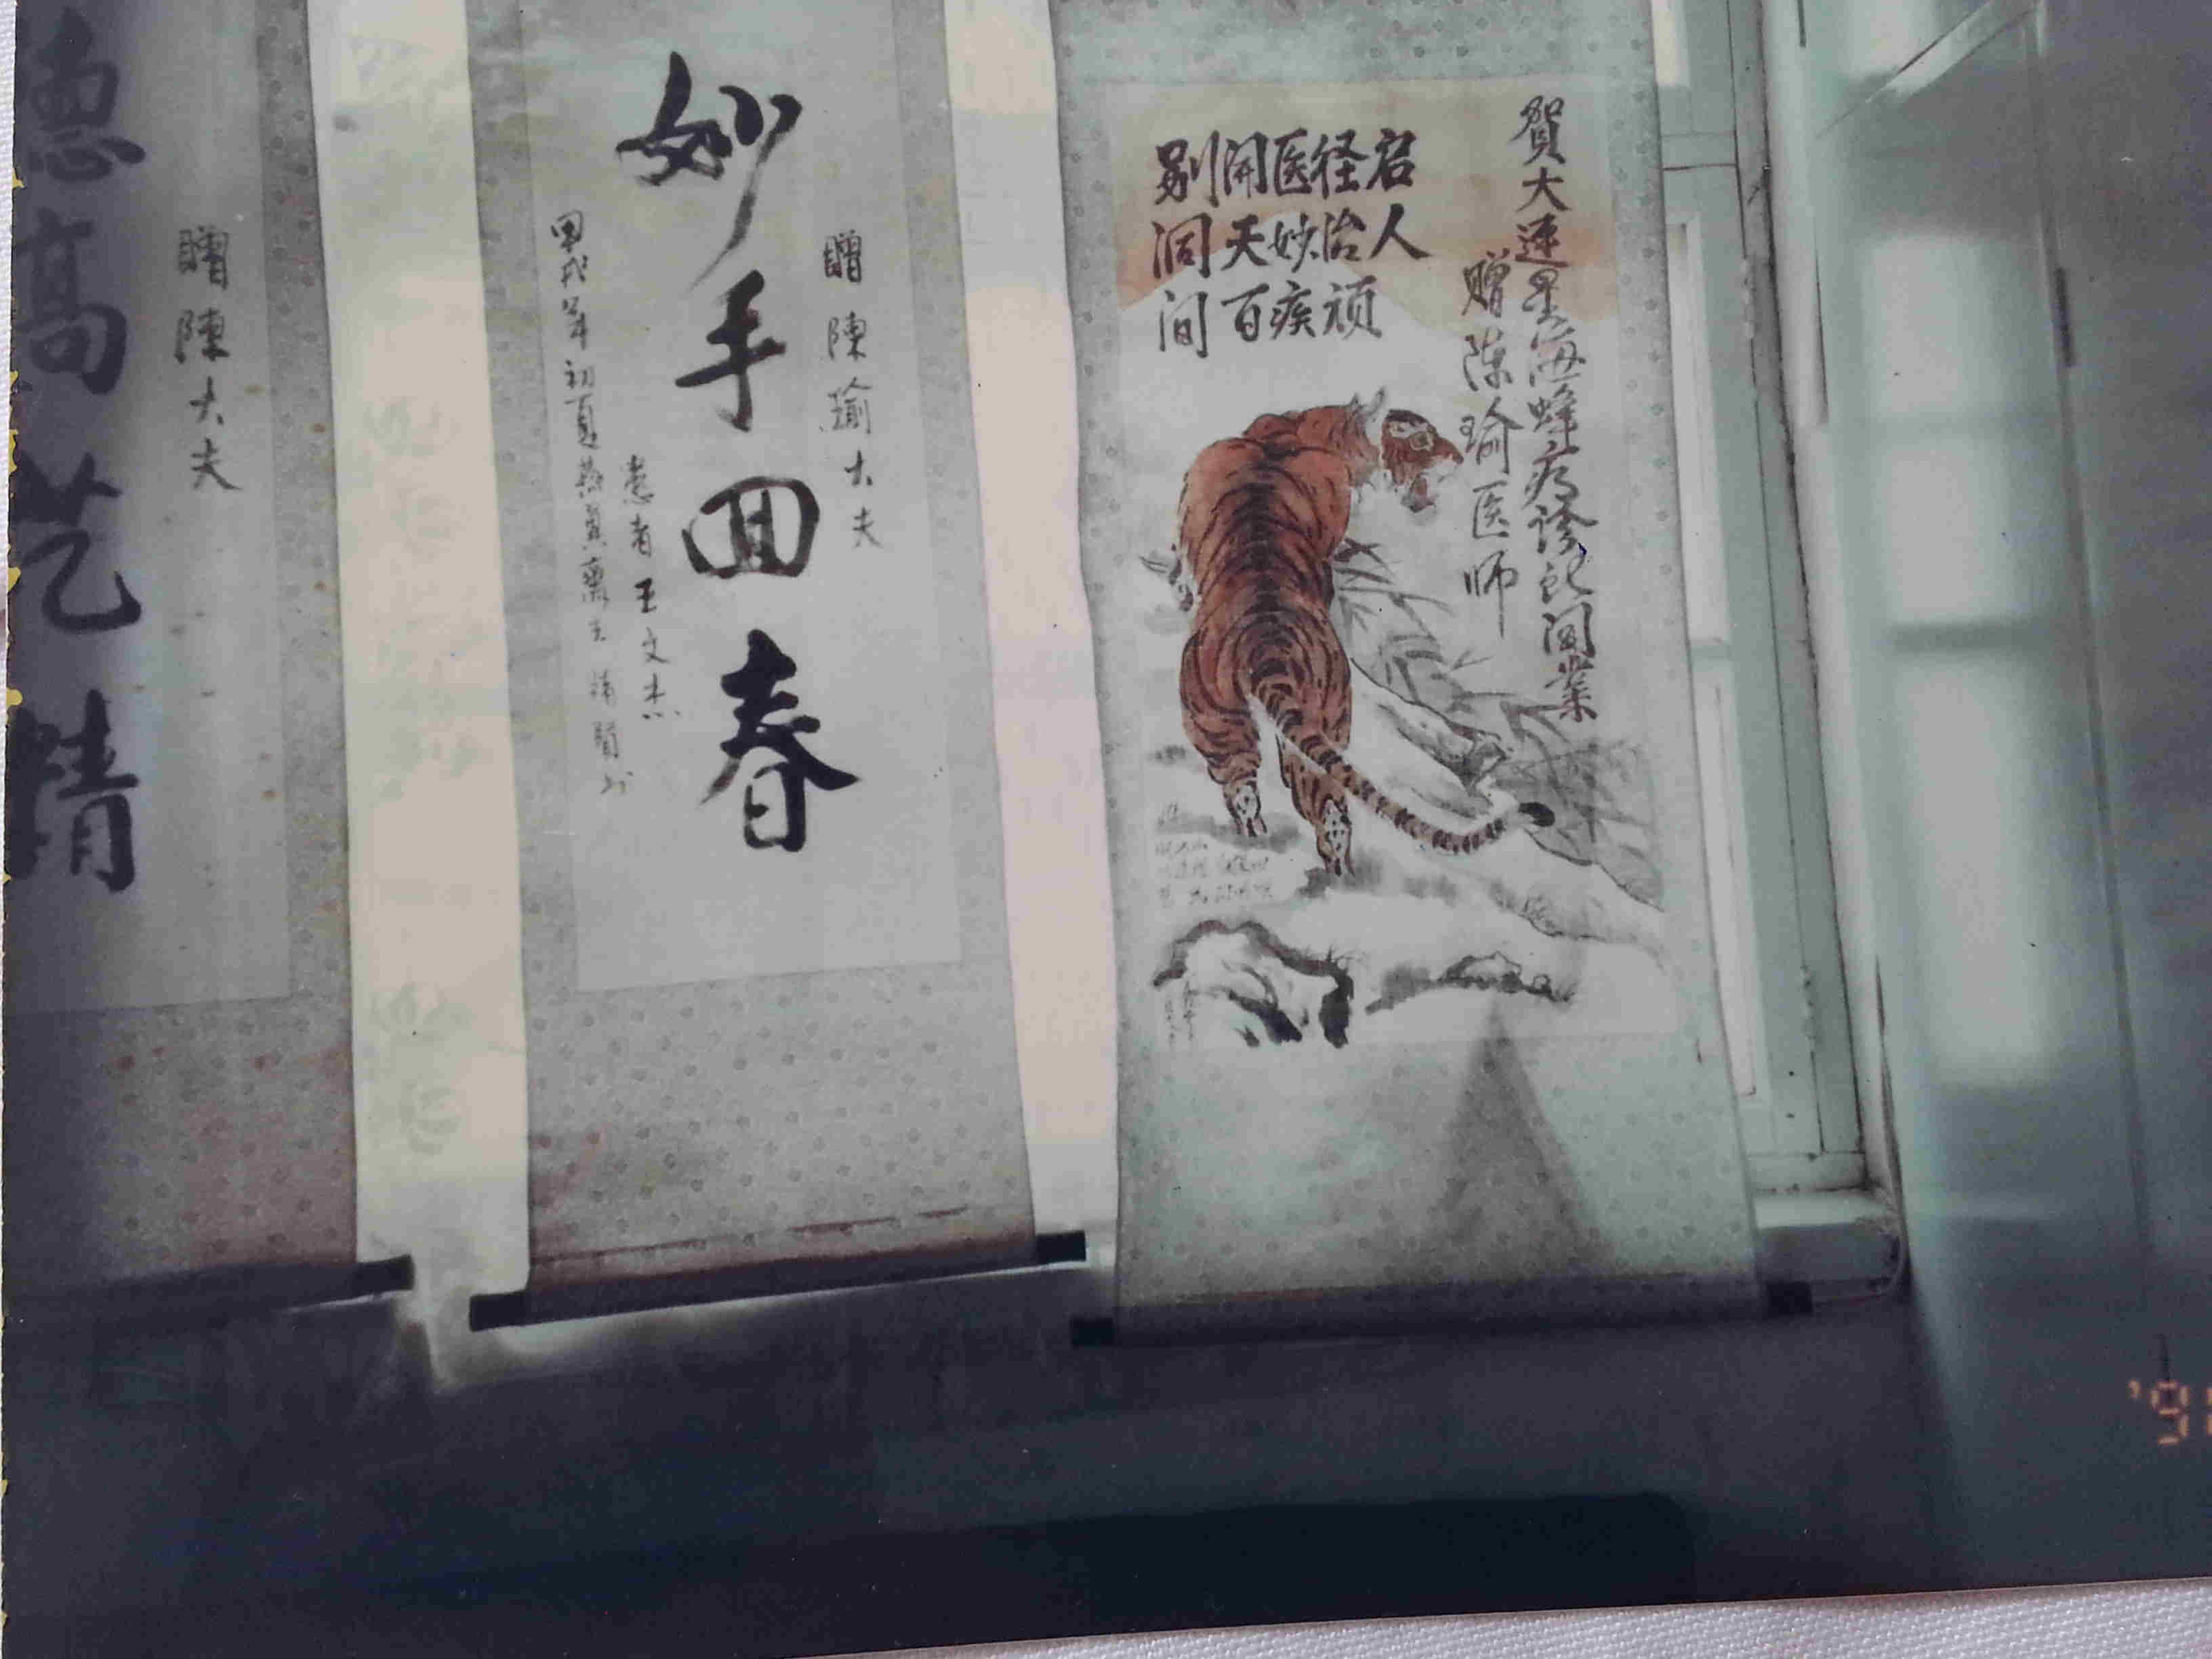 星海蜂疗诊所开业时陈俞医生学校部分同志与公安局孙处长所赠送的条幅。